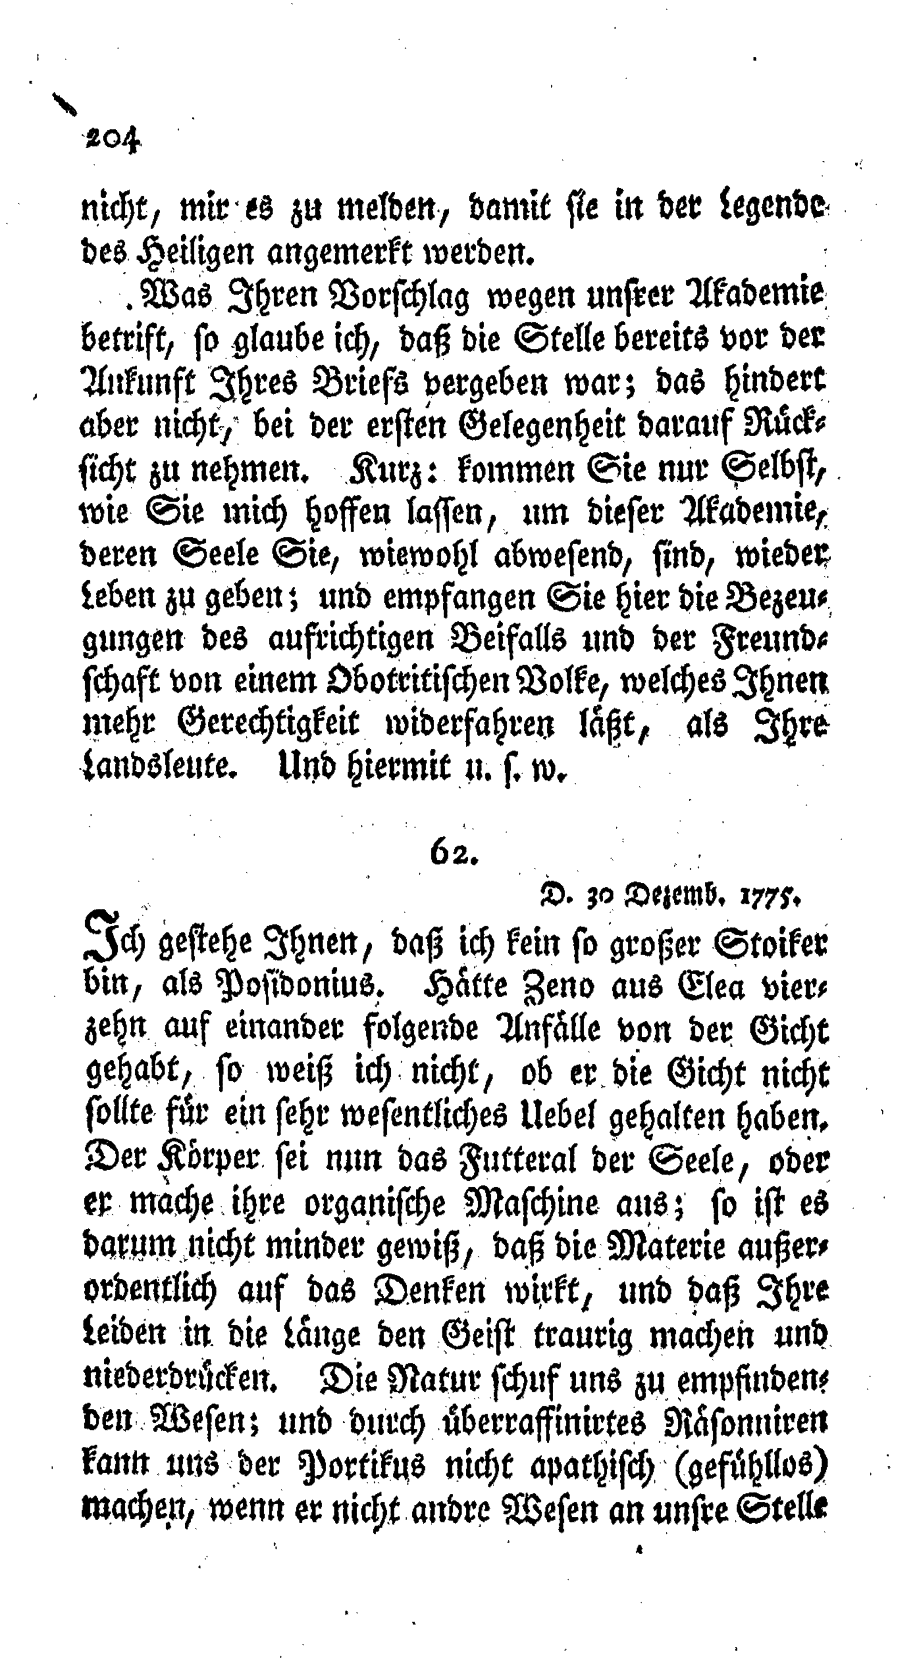 S. 204, Obj. 2